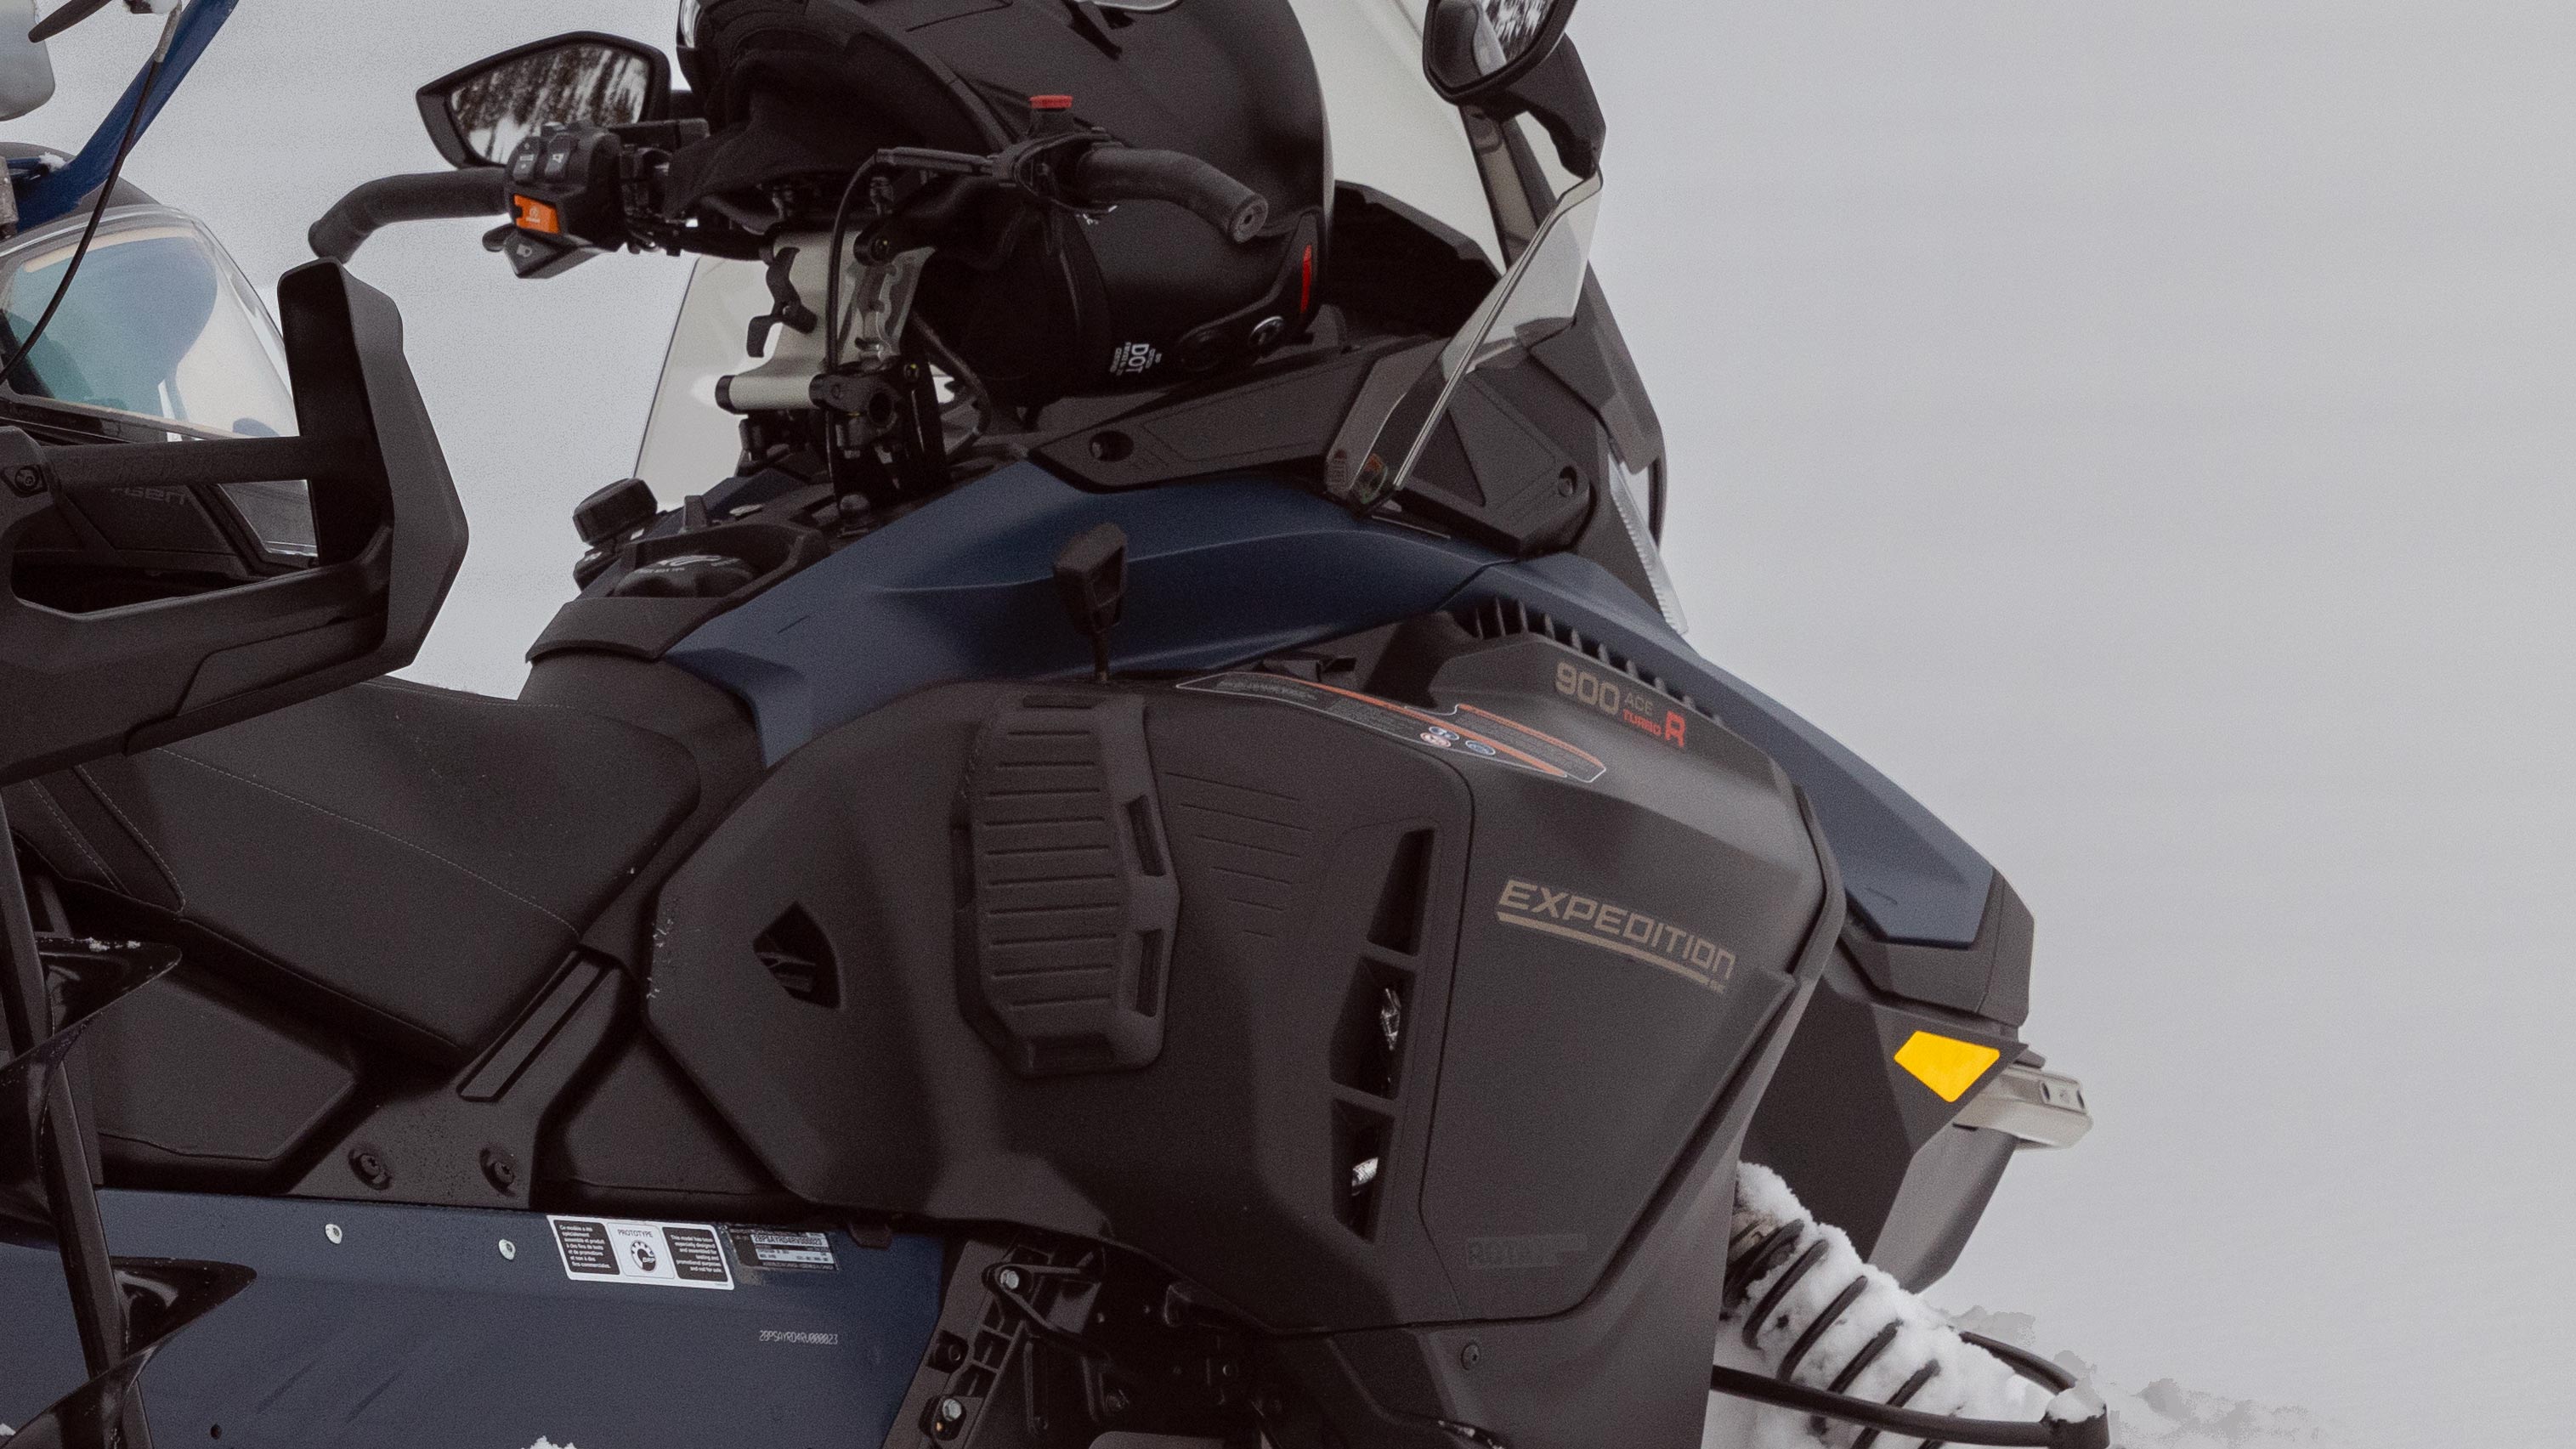 Chránič na kolená na skútri 2025 Ski-Doo Expedition crossover